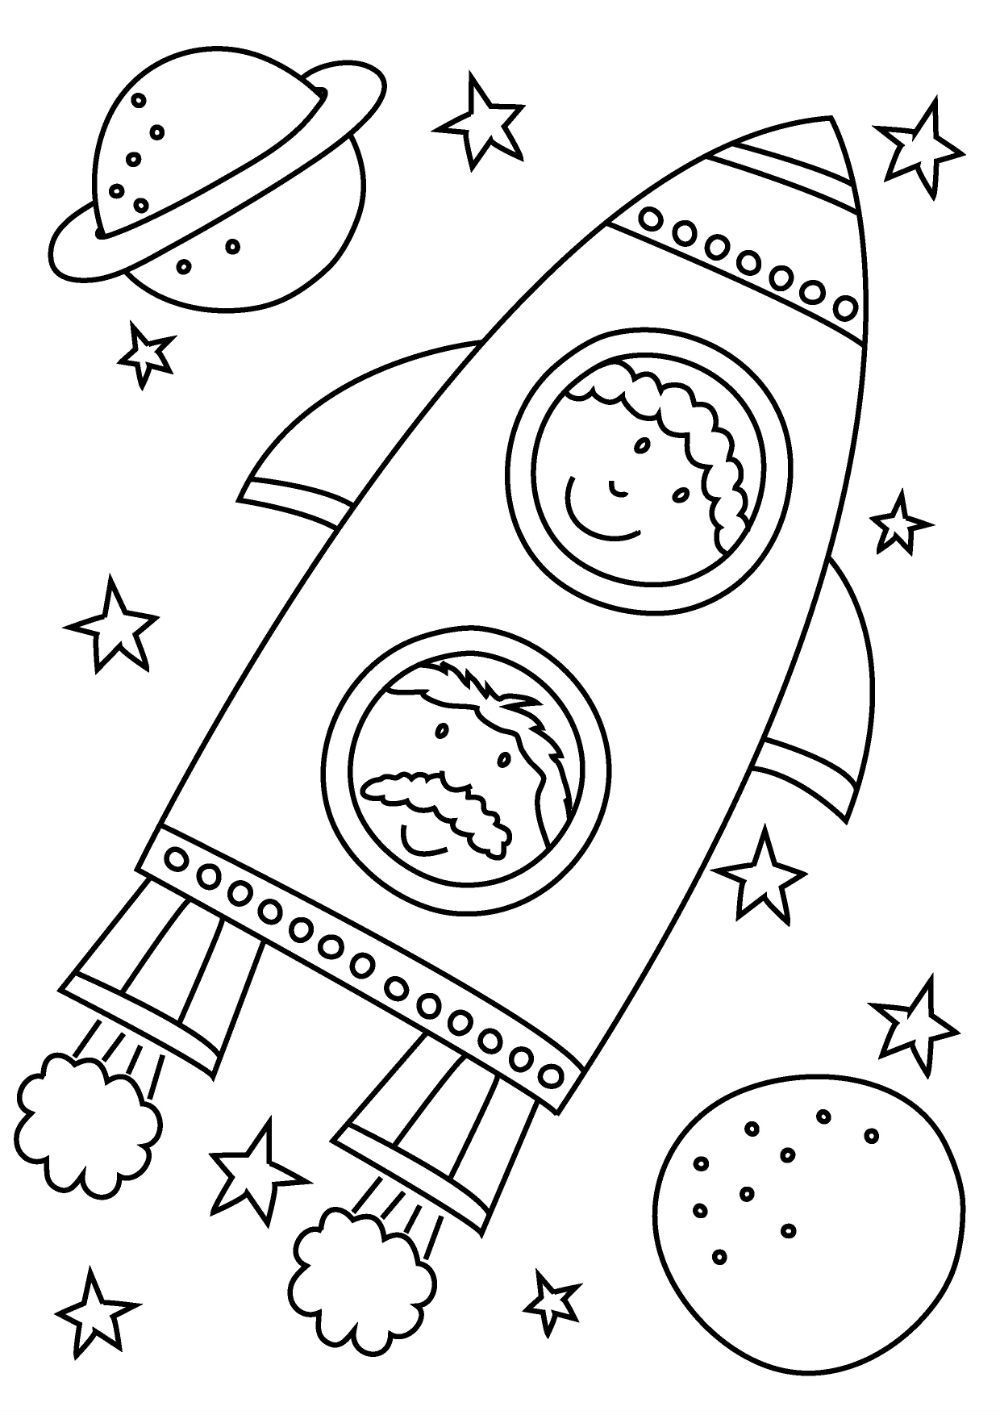 Раскраска с звездами и планетами рядом ракета (планеты)